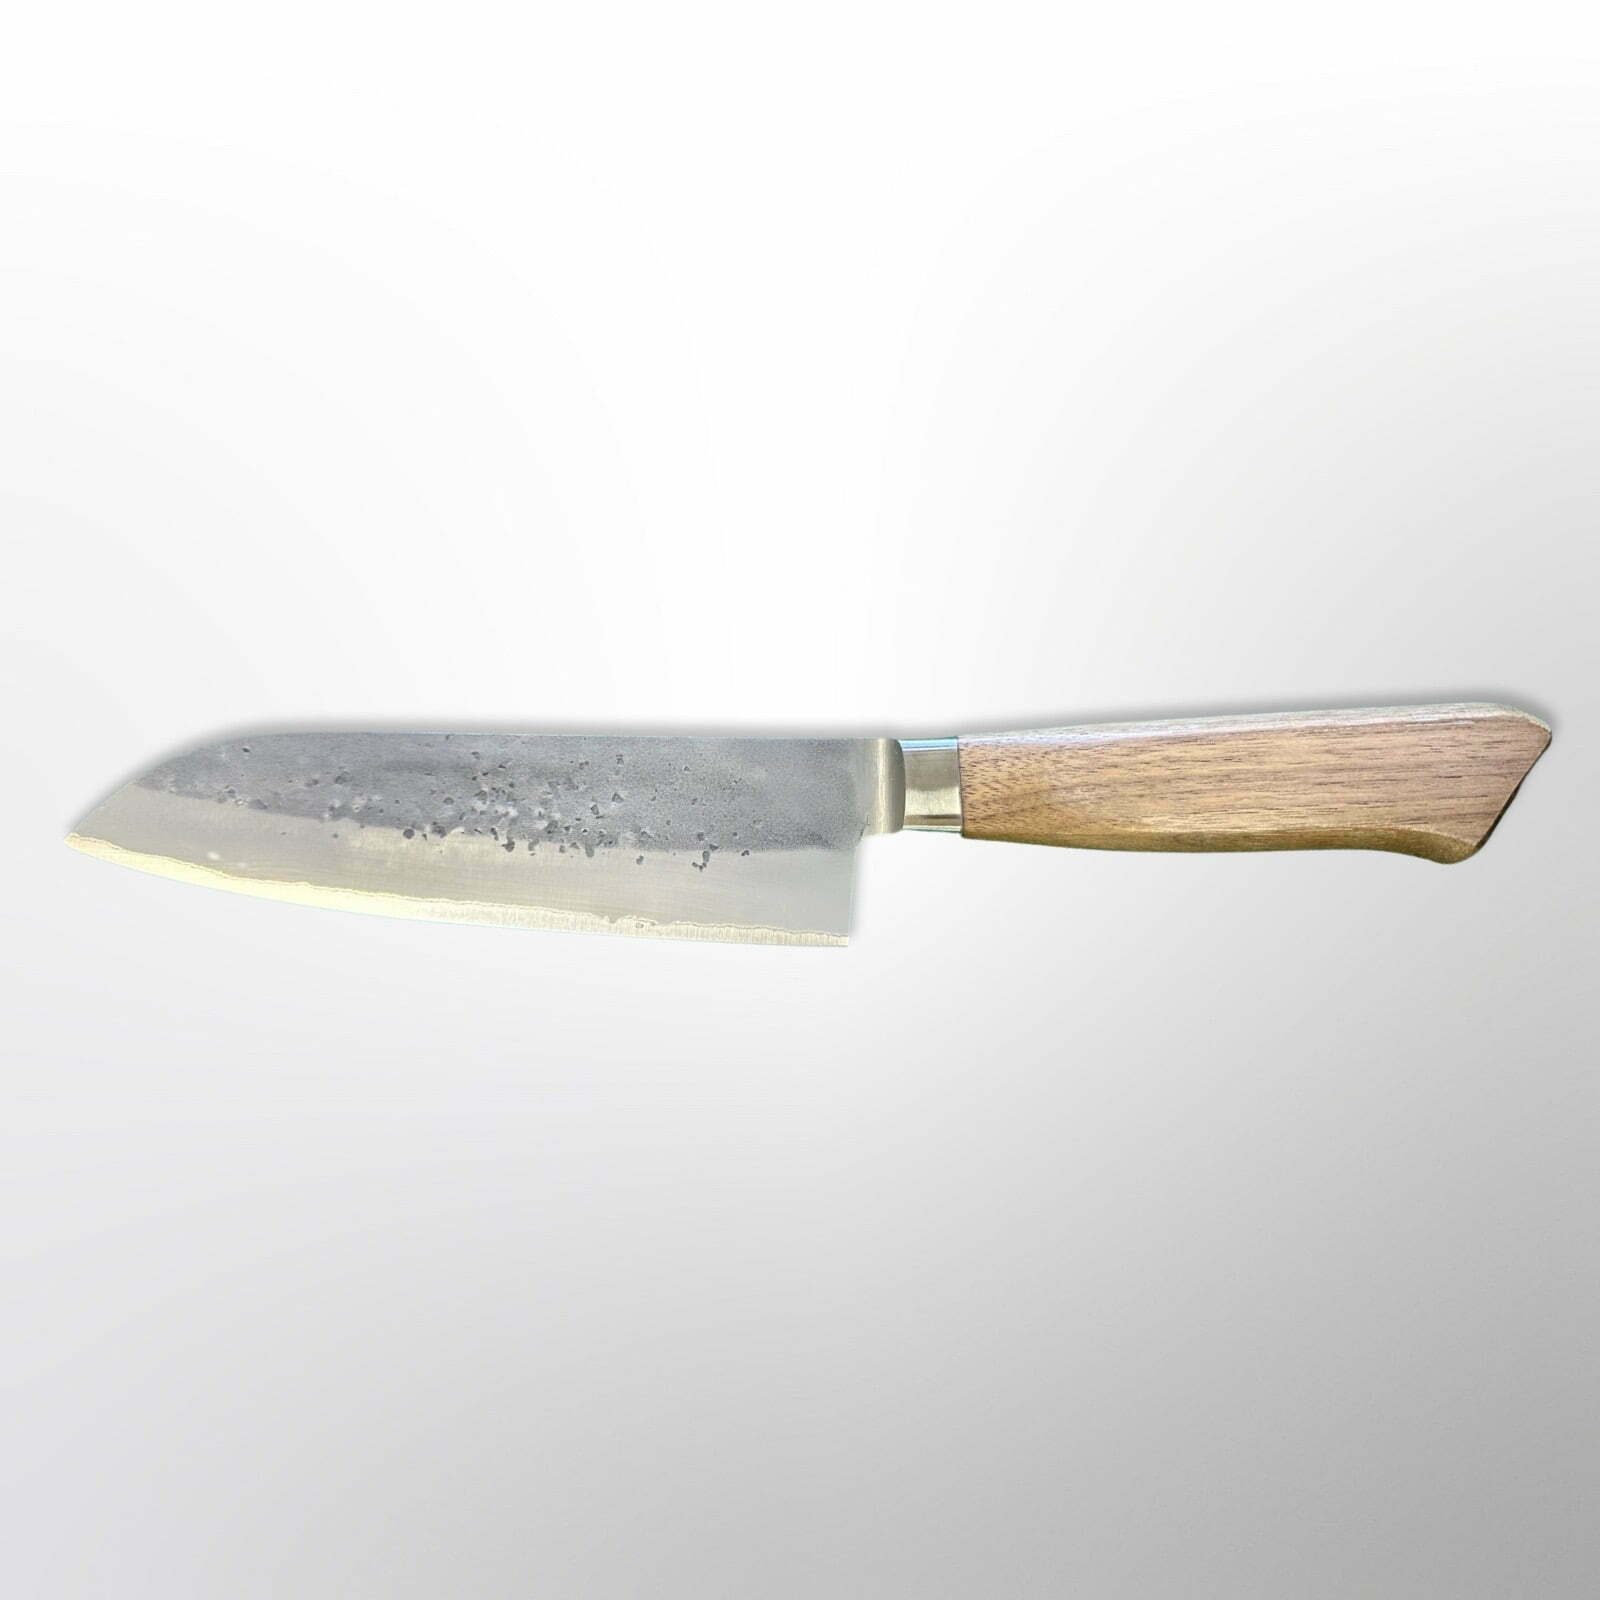  סכין רב-תכליתית סָנטוֹקוּ 170מ״מ מחוזקת 3 שכבות: פלדת פחמן יפנית אוגמי2 עטופה פלדת אל-חלד גימור נשיג׳י טדאפוסה יפן